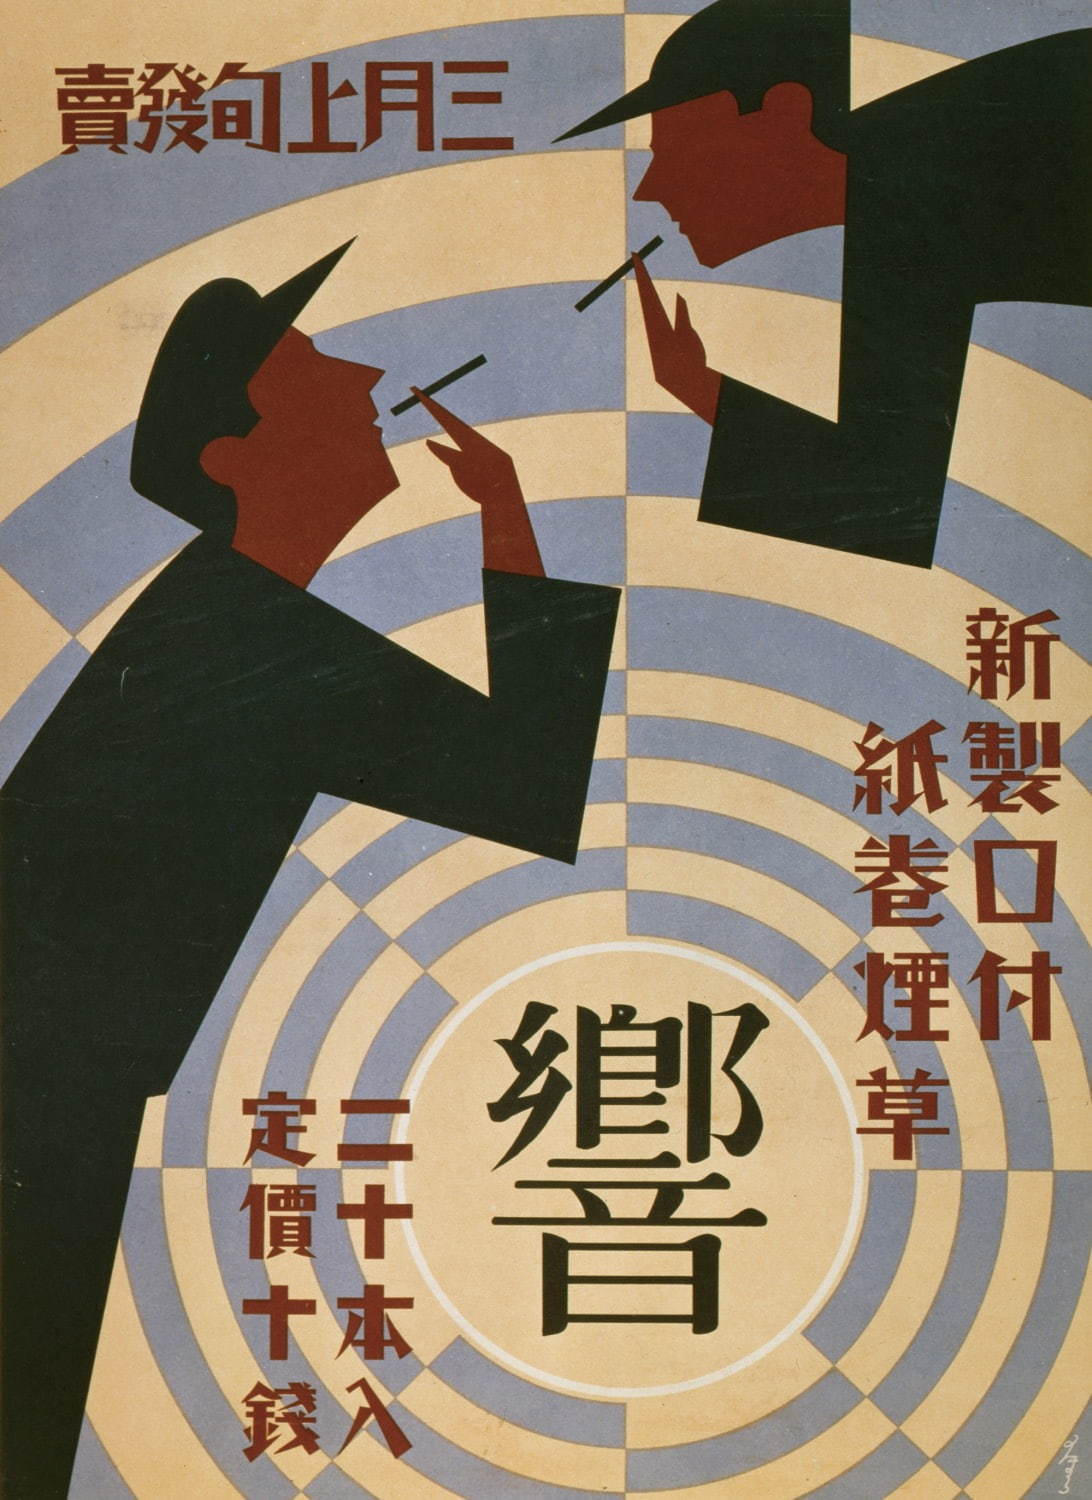 大蔵省専売局「響」ポスターデザイン：野村昇、1932年、オフセット、たばこと塩の博物館蔵